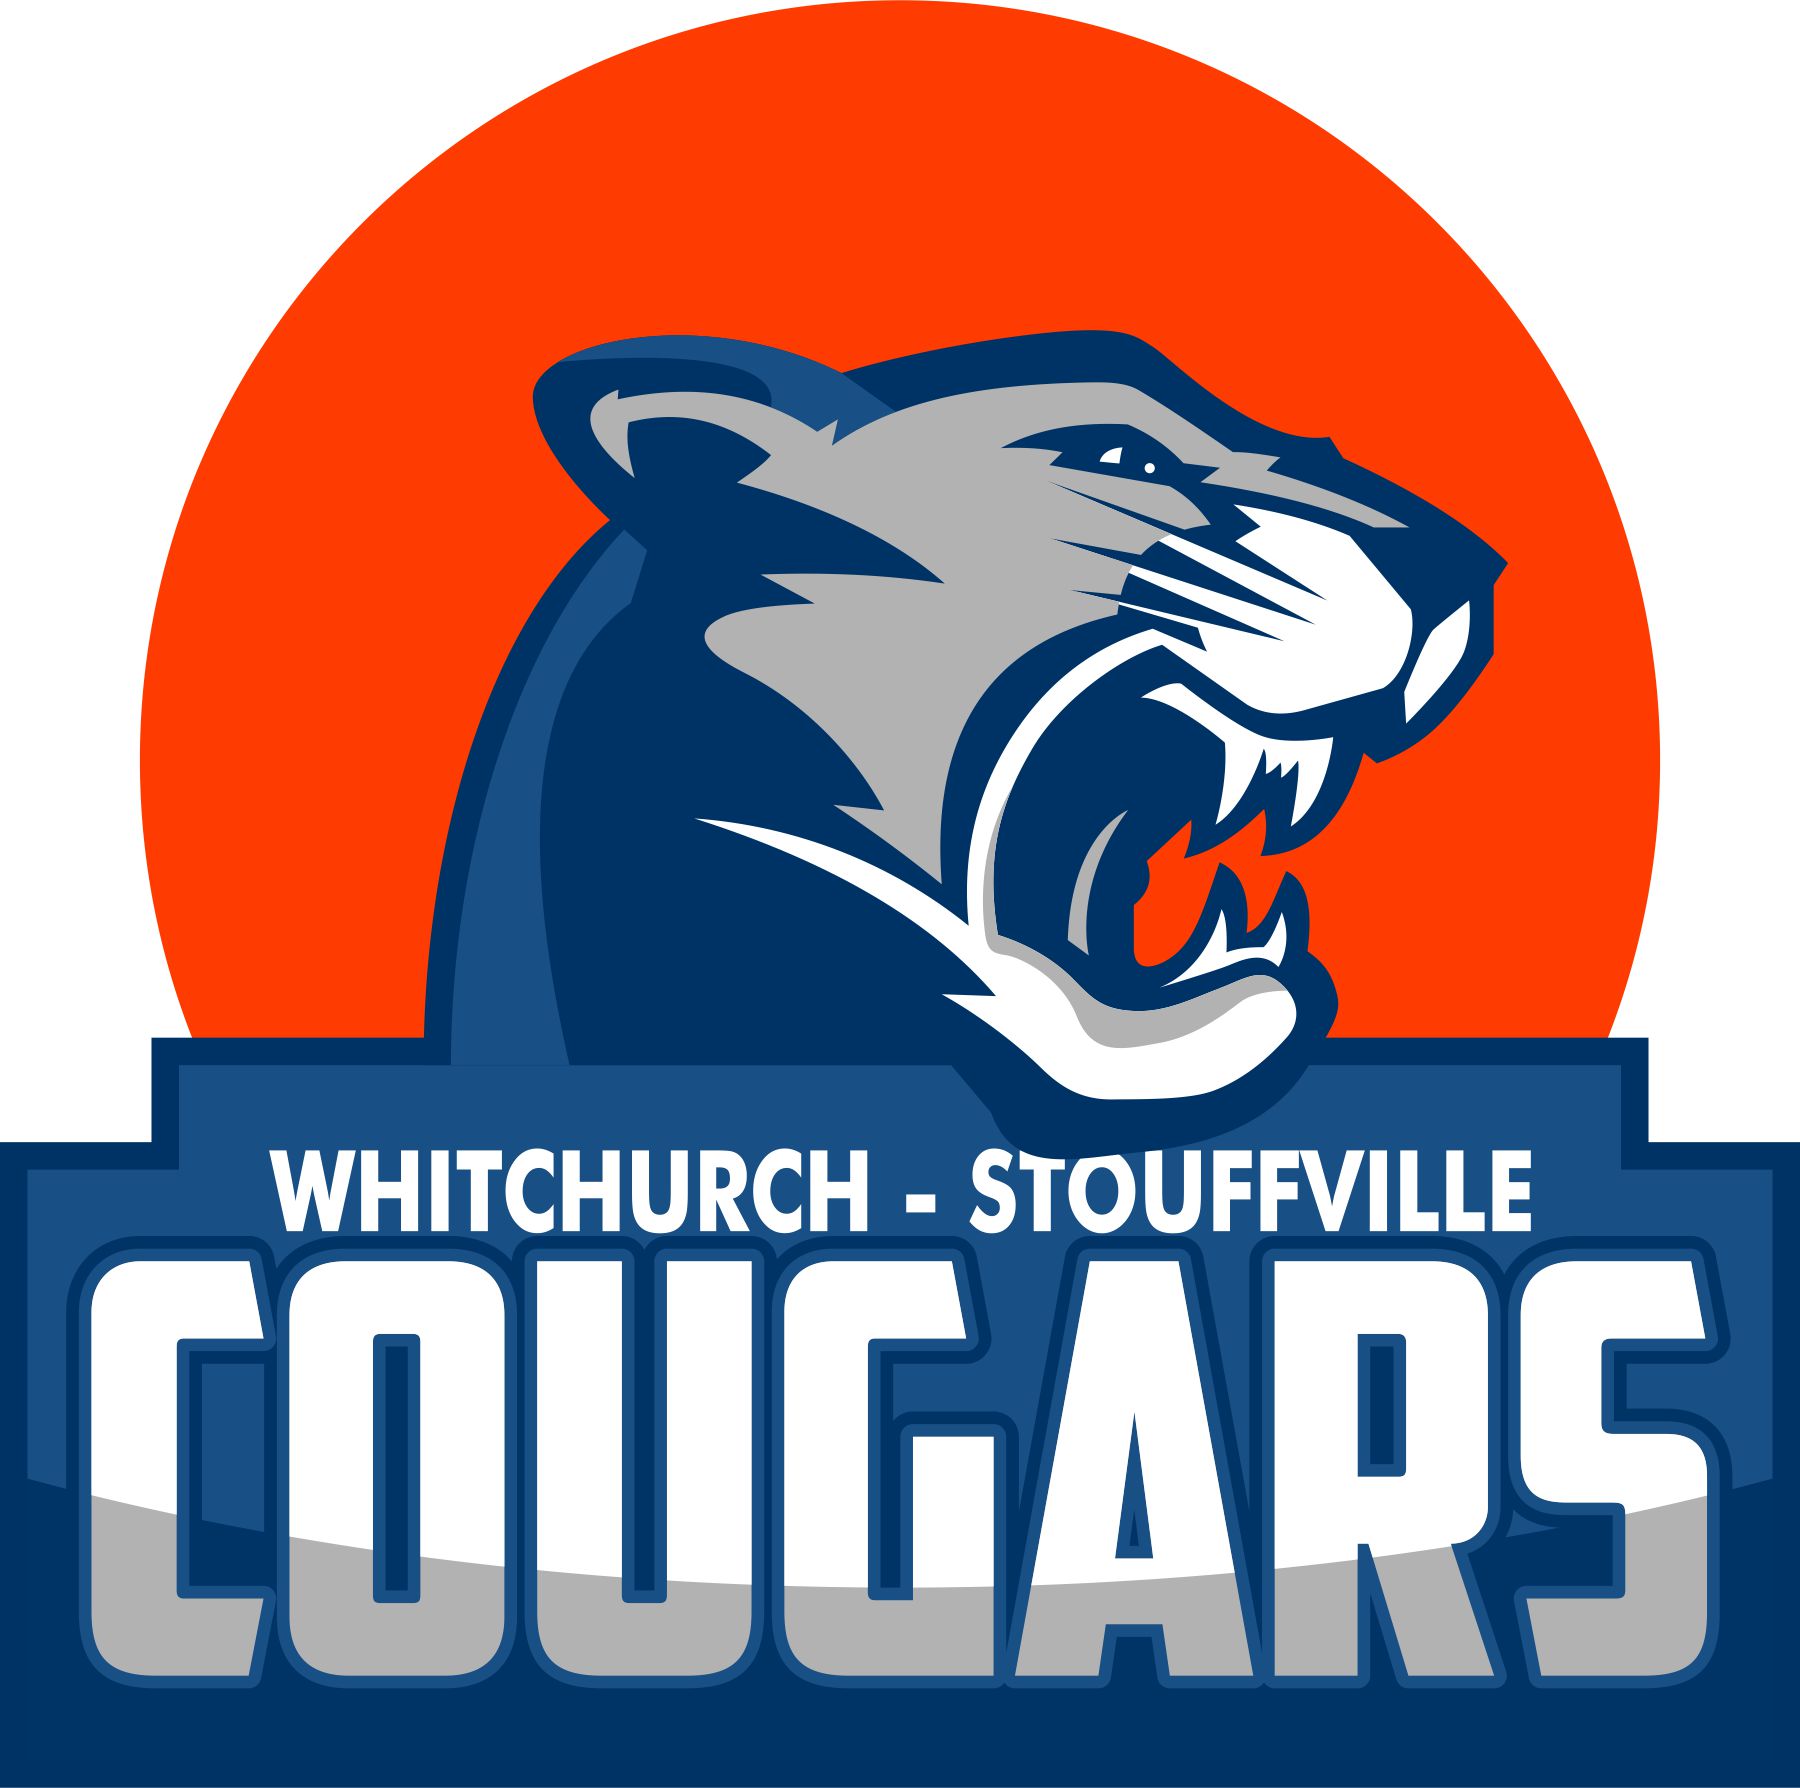 Whitchurch-Stouffville